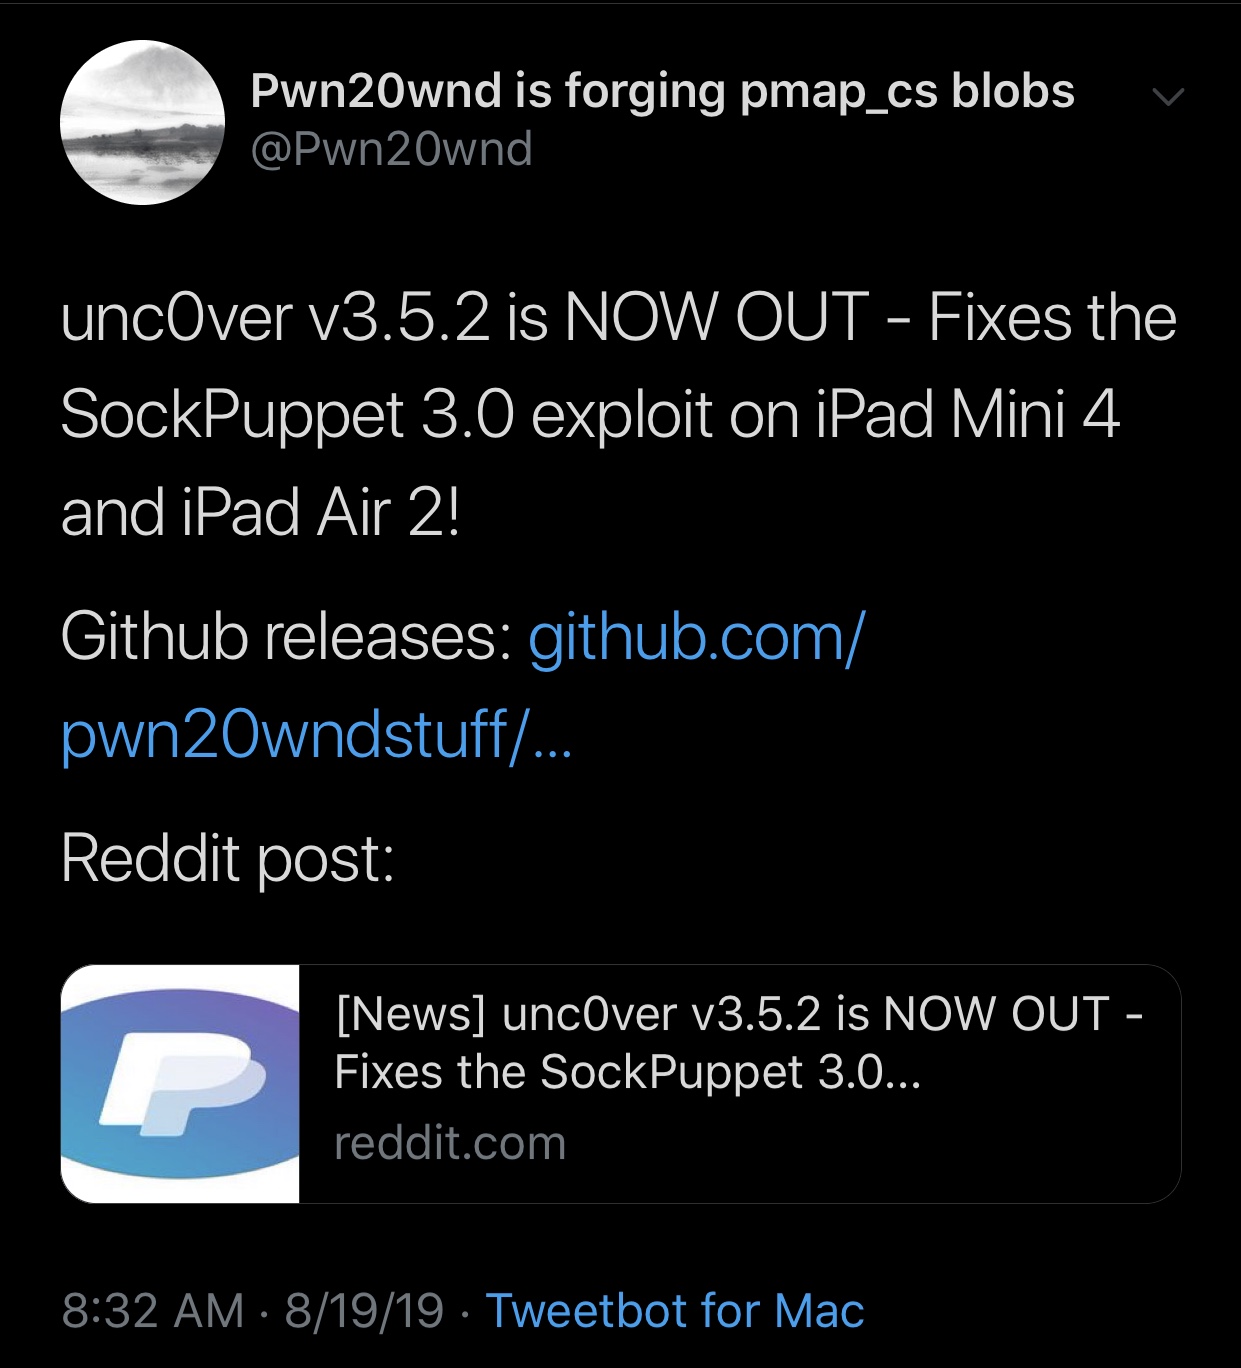 Pwn20wnd menjatuhkan un0ver v3.5.2 untuk meningkatkan penambangan Sock Puppet di iPad 3 tertentu